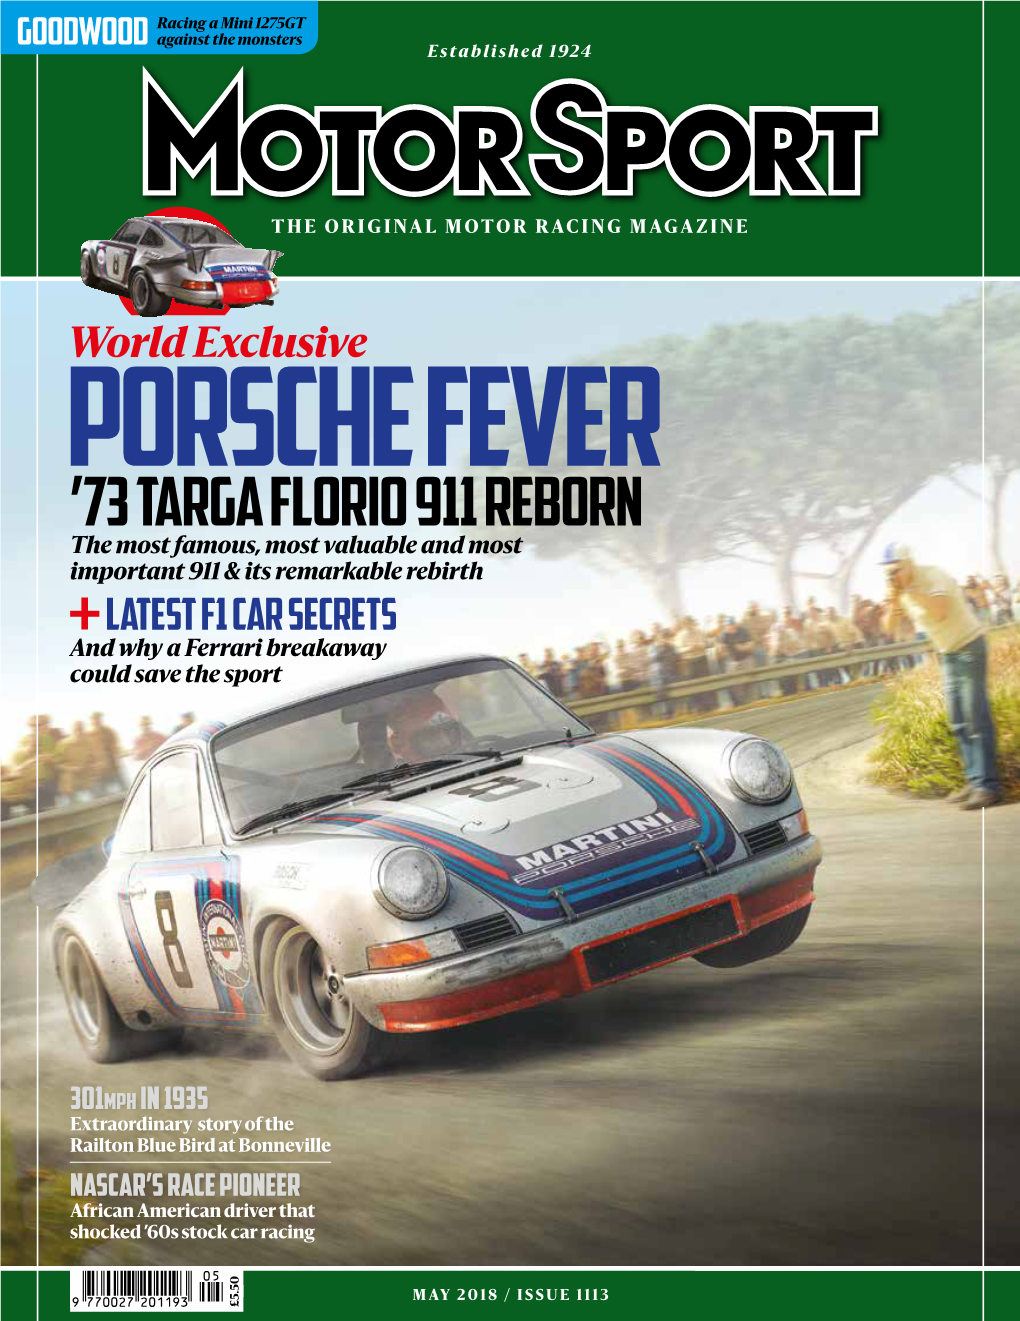 '73 Targa Florio 911 Reborn